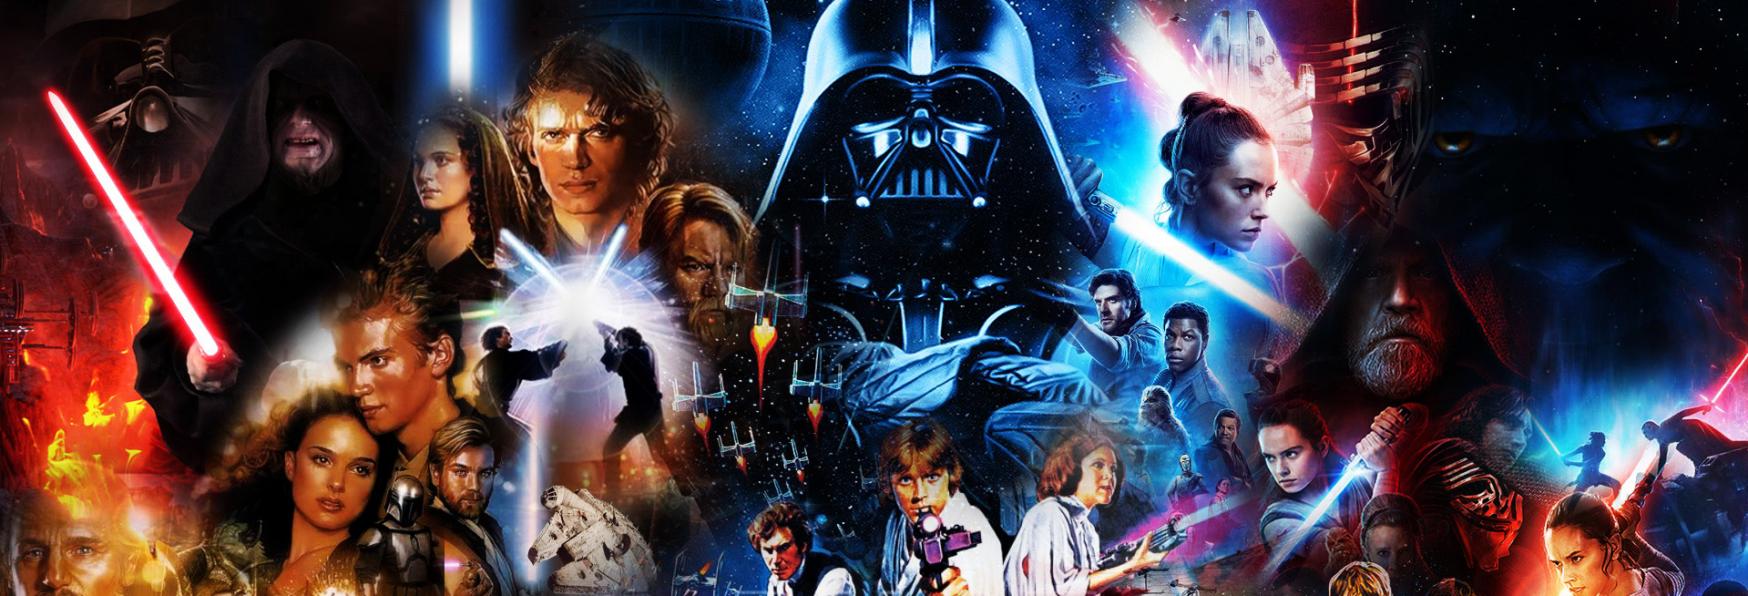 Star Wars: in arrivo una nuova Serie TV Disney+ incentrata su L’Alta Repubblica